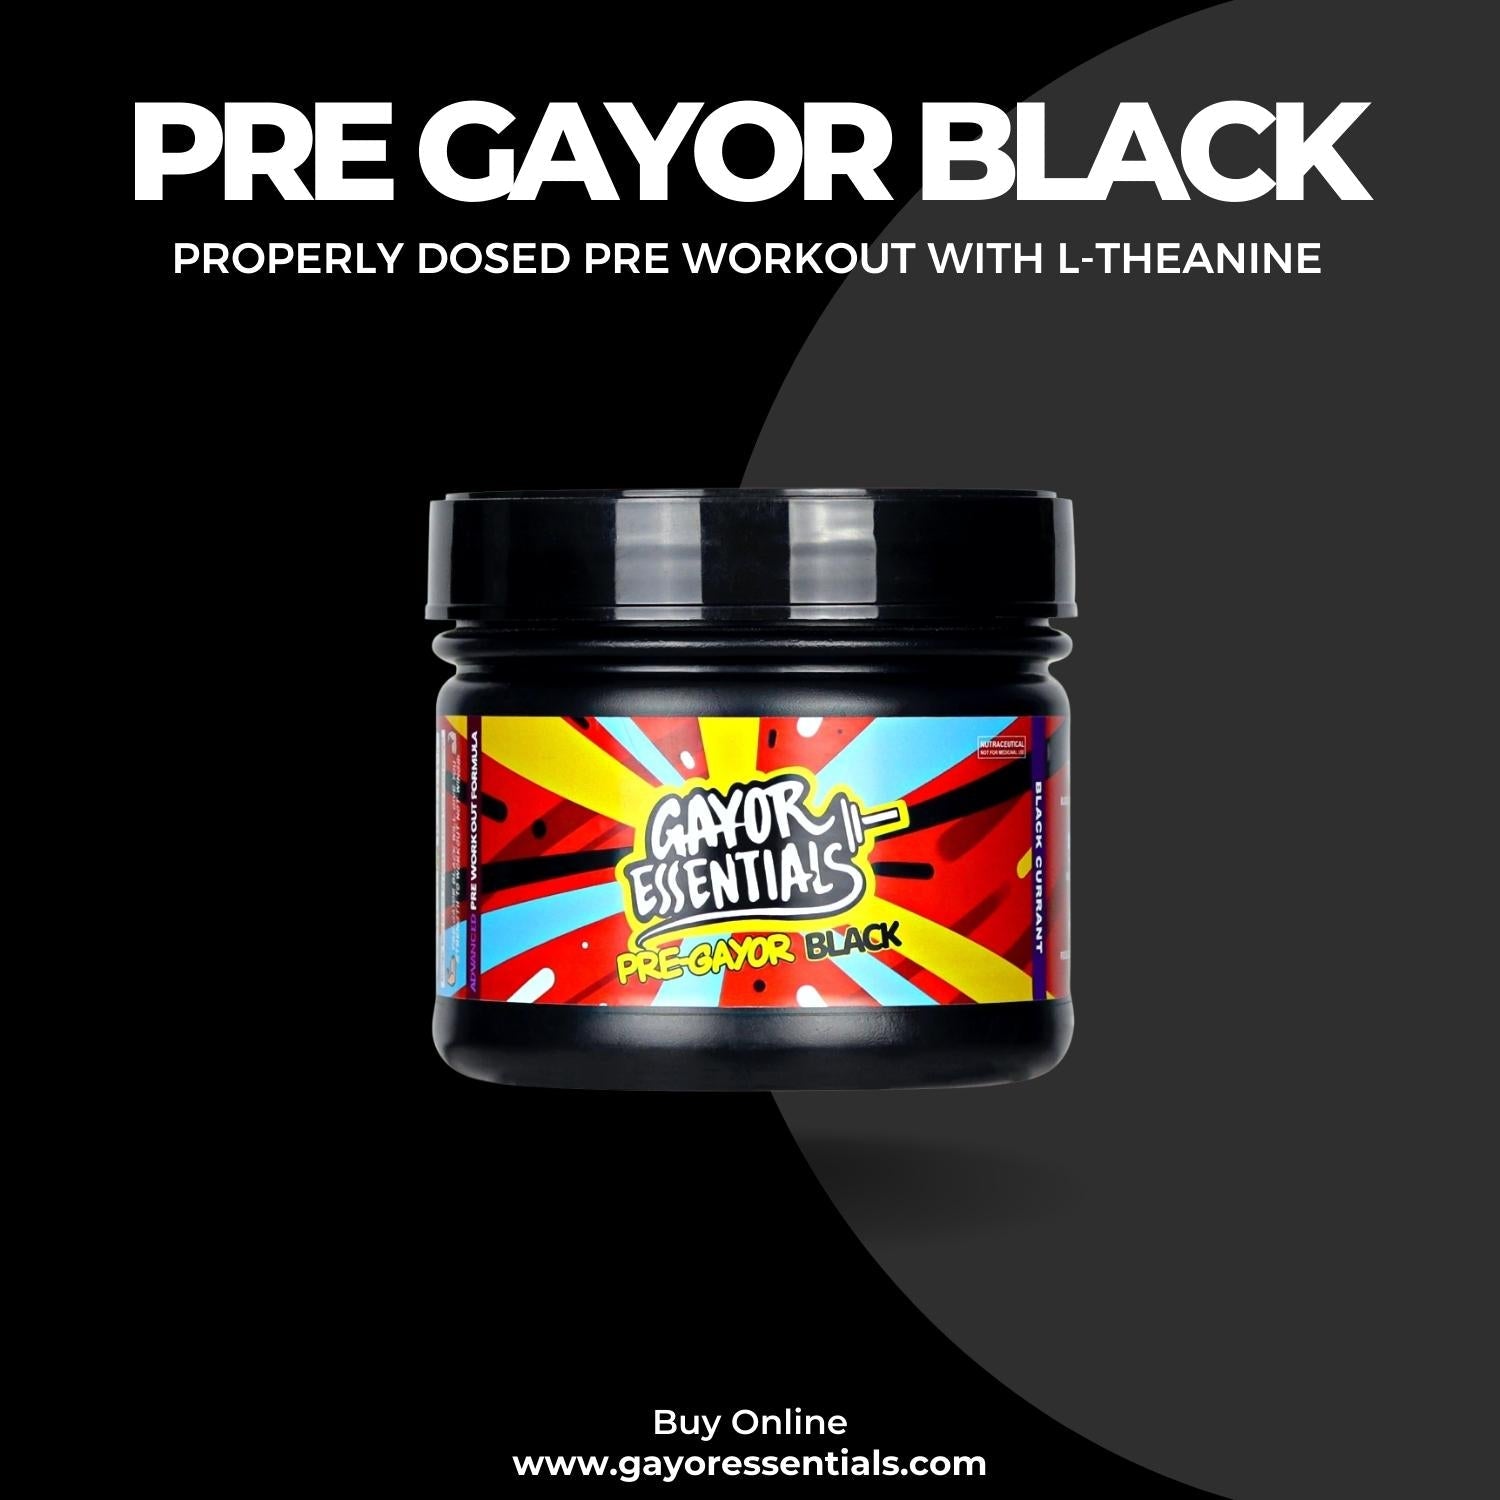 Pre Gayor Black + Pre Gayor Black T-SHIRT BUNDLE